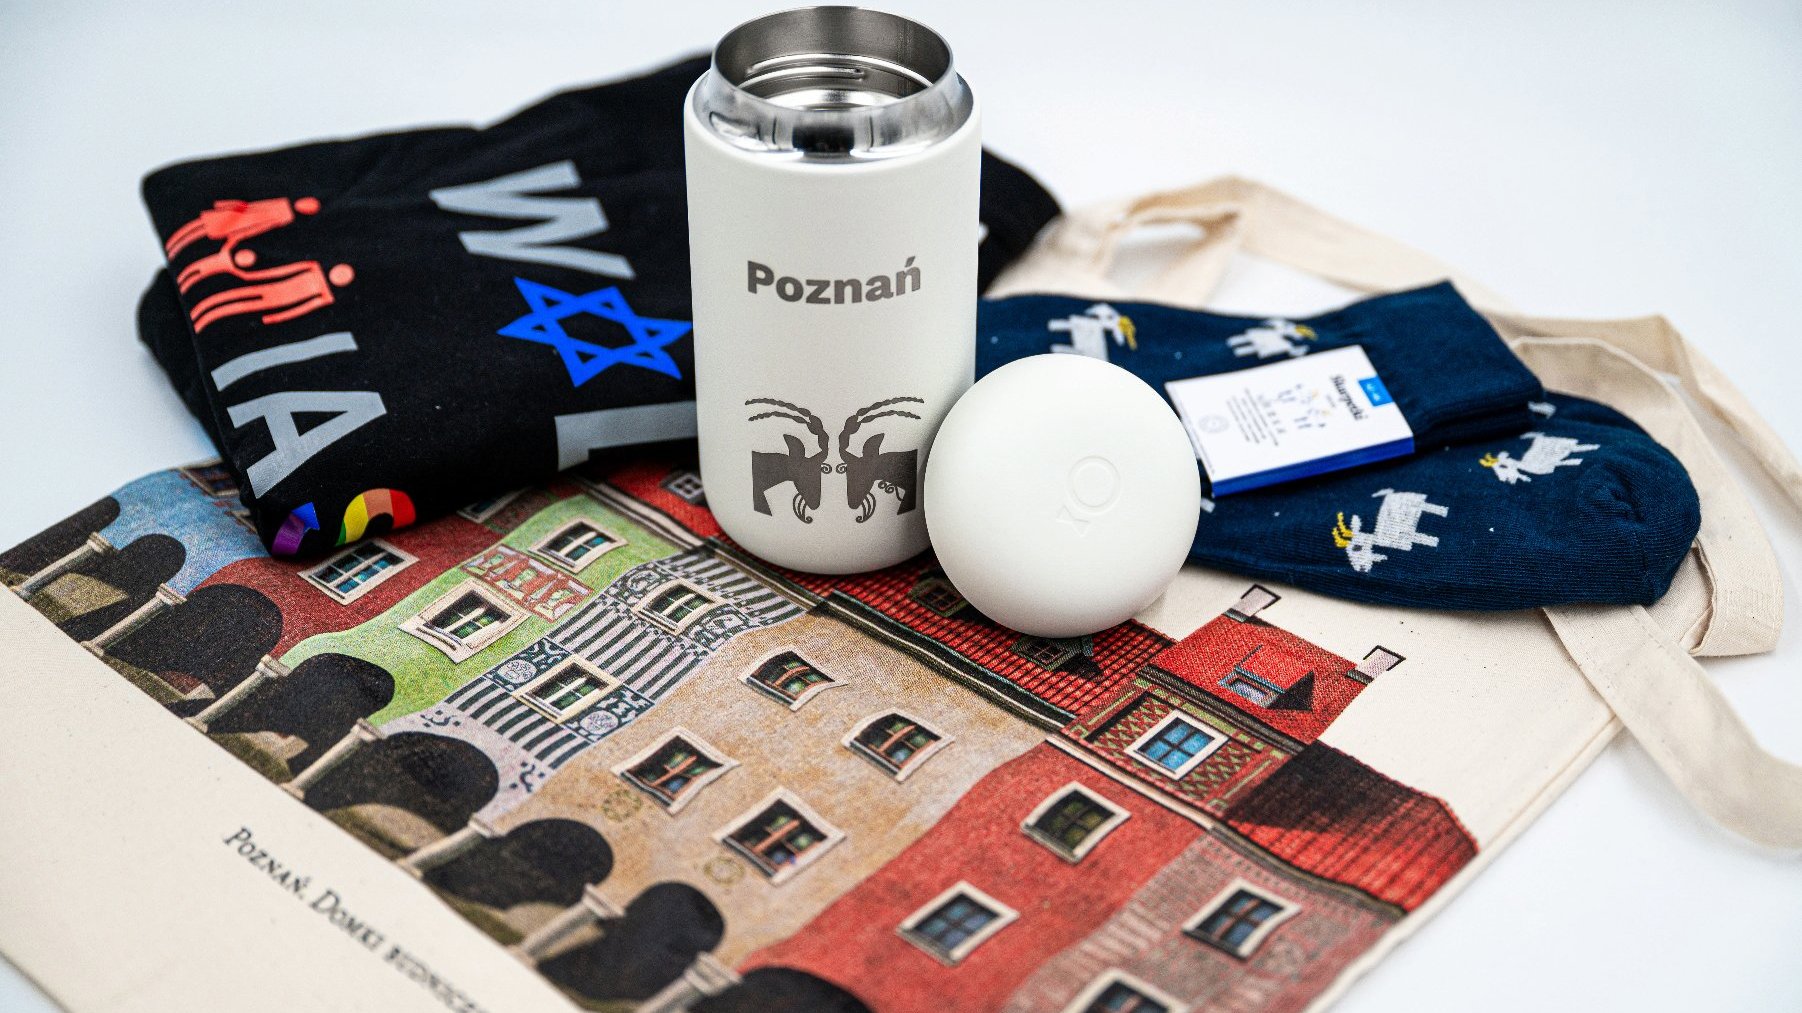 Zdjęcie przedstawia pakiet gadżetów promocyjnych, w skład których wchodzą m.in. koszulka "Wolne miasto Poznań", kubek termiczny z poznańskimi koziołkami i skarpetki.